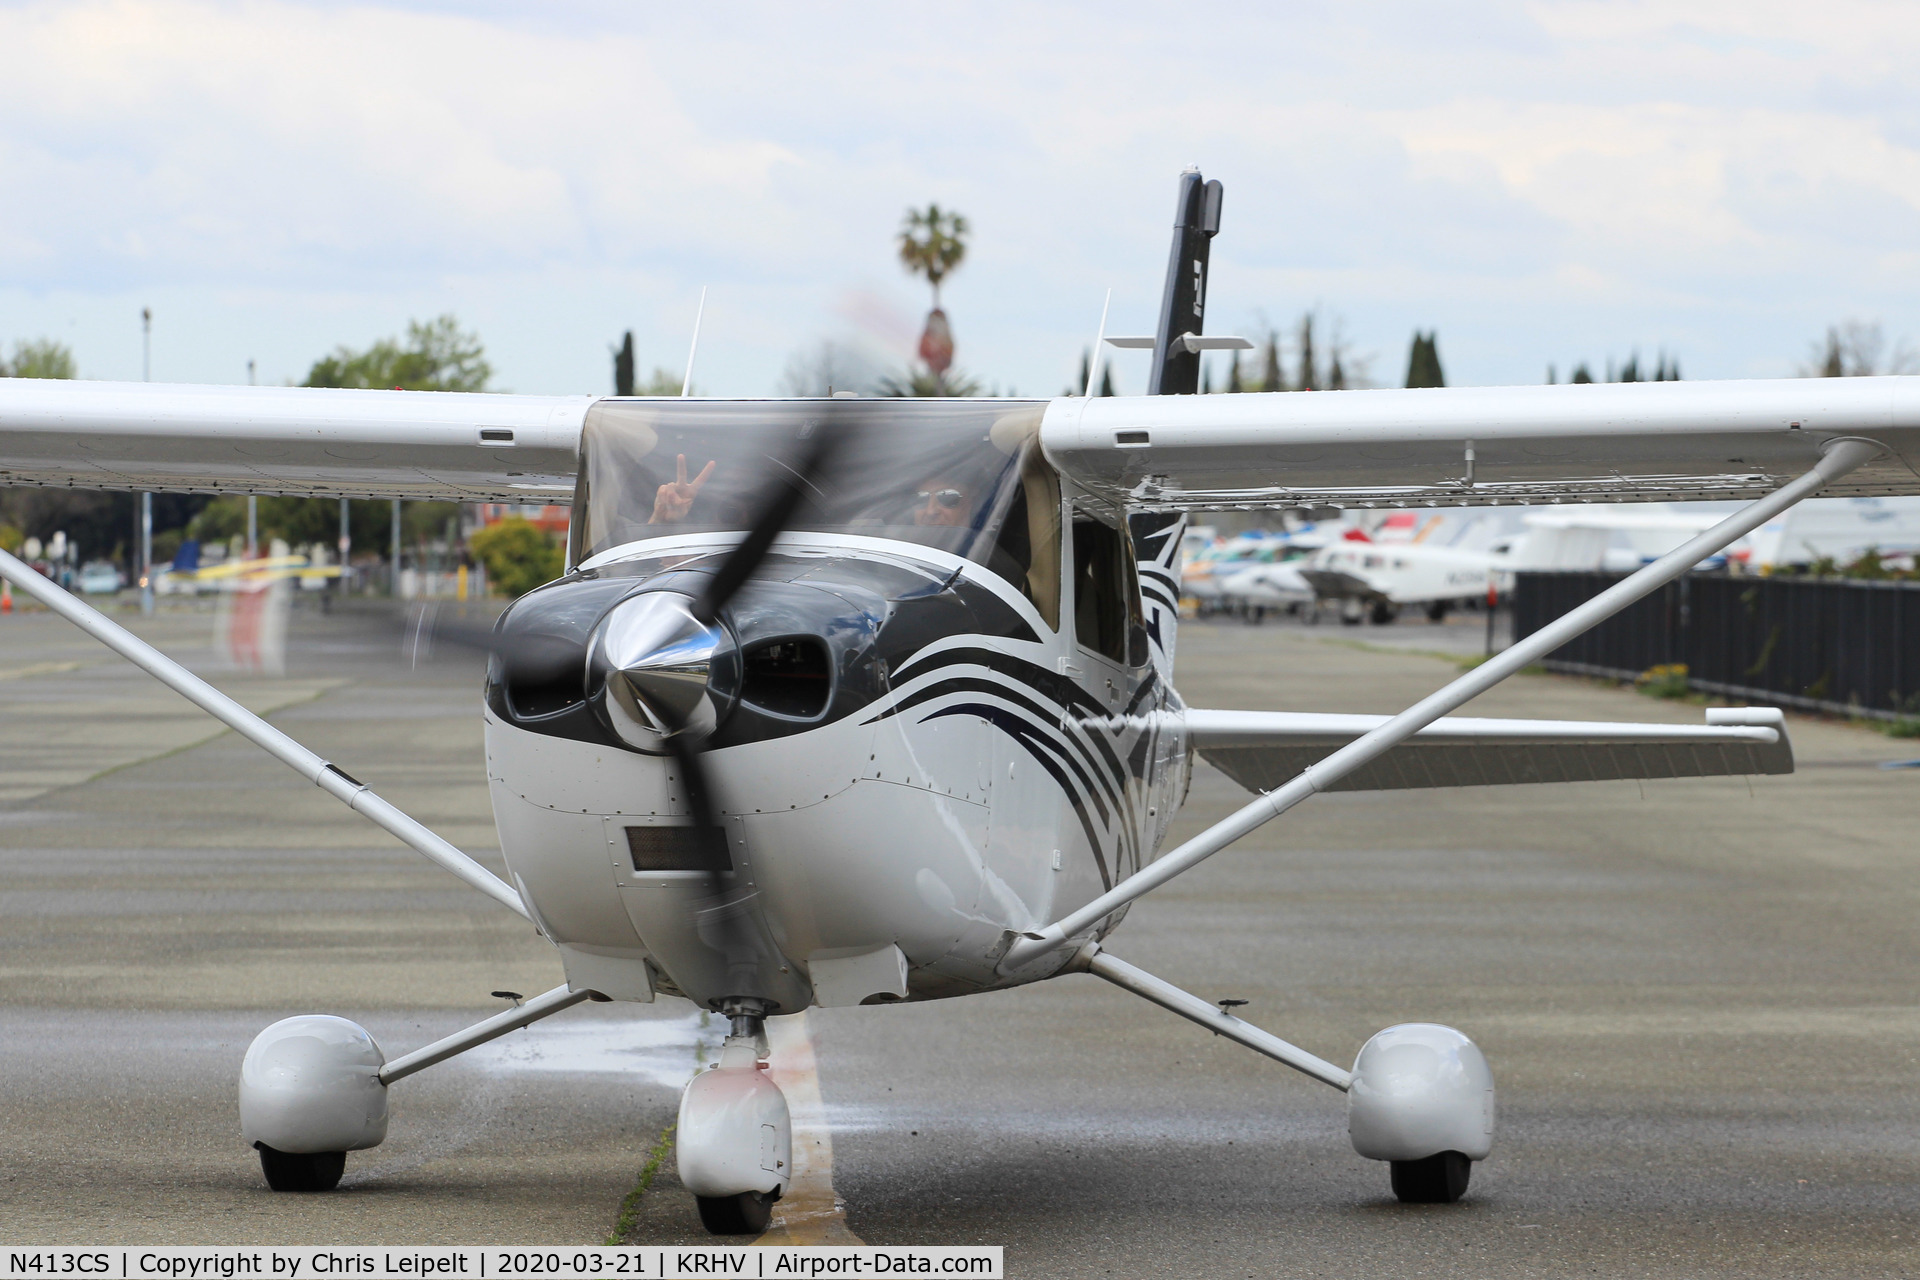 N413CS, 2016 Cessna 182T Skylane Skylane C/N 18282413, 2016 Cessna 182T Skylane taxing out for departure at Reid Hillview Airport, San Jose, CA.